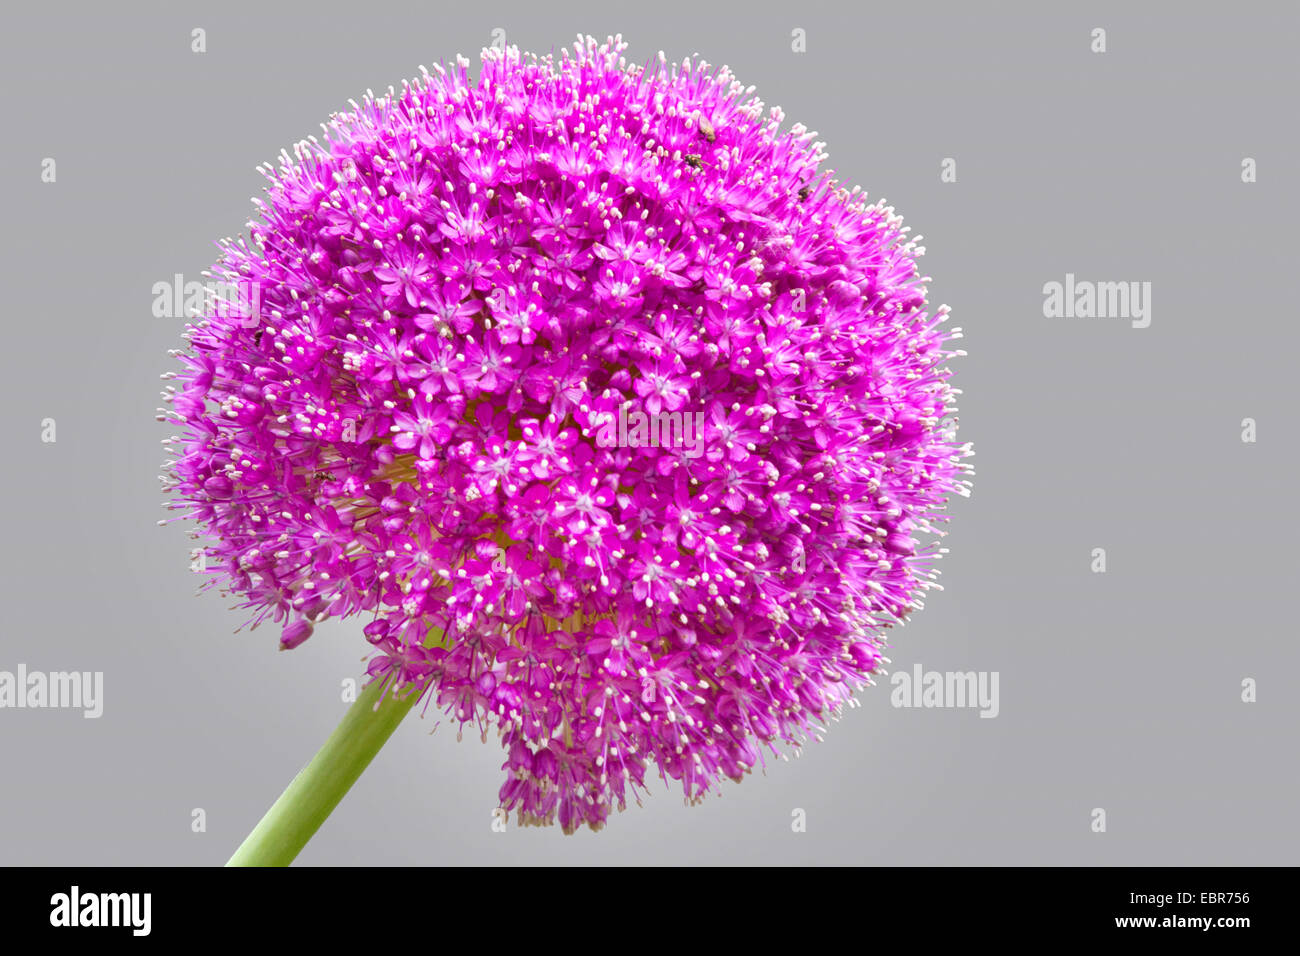 Allium giganteum (Allium giganteum), inflorescence Stock Photo